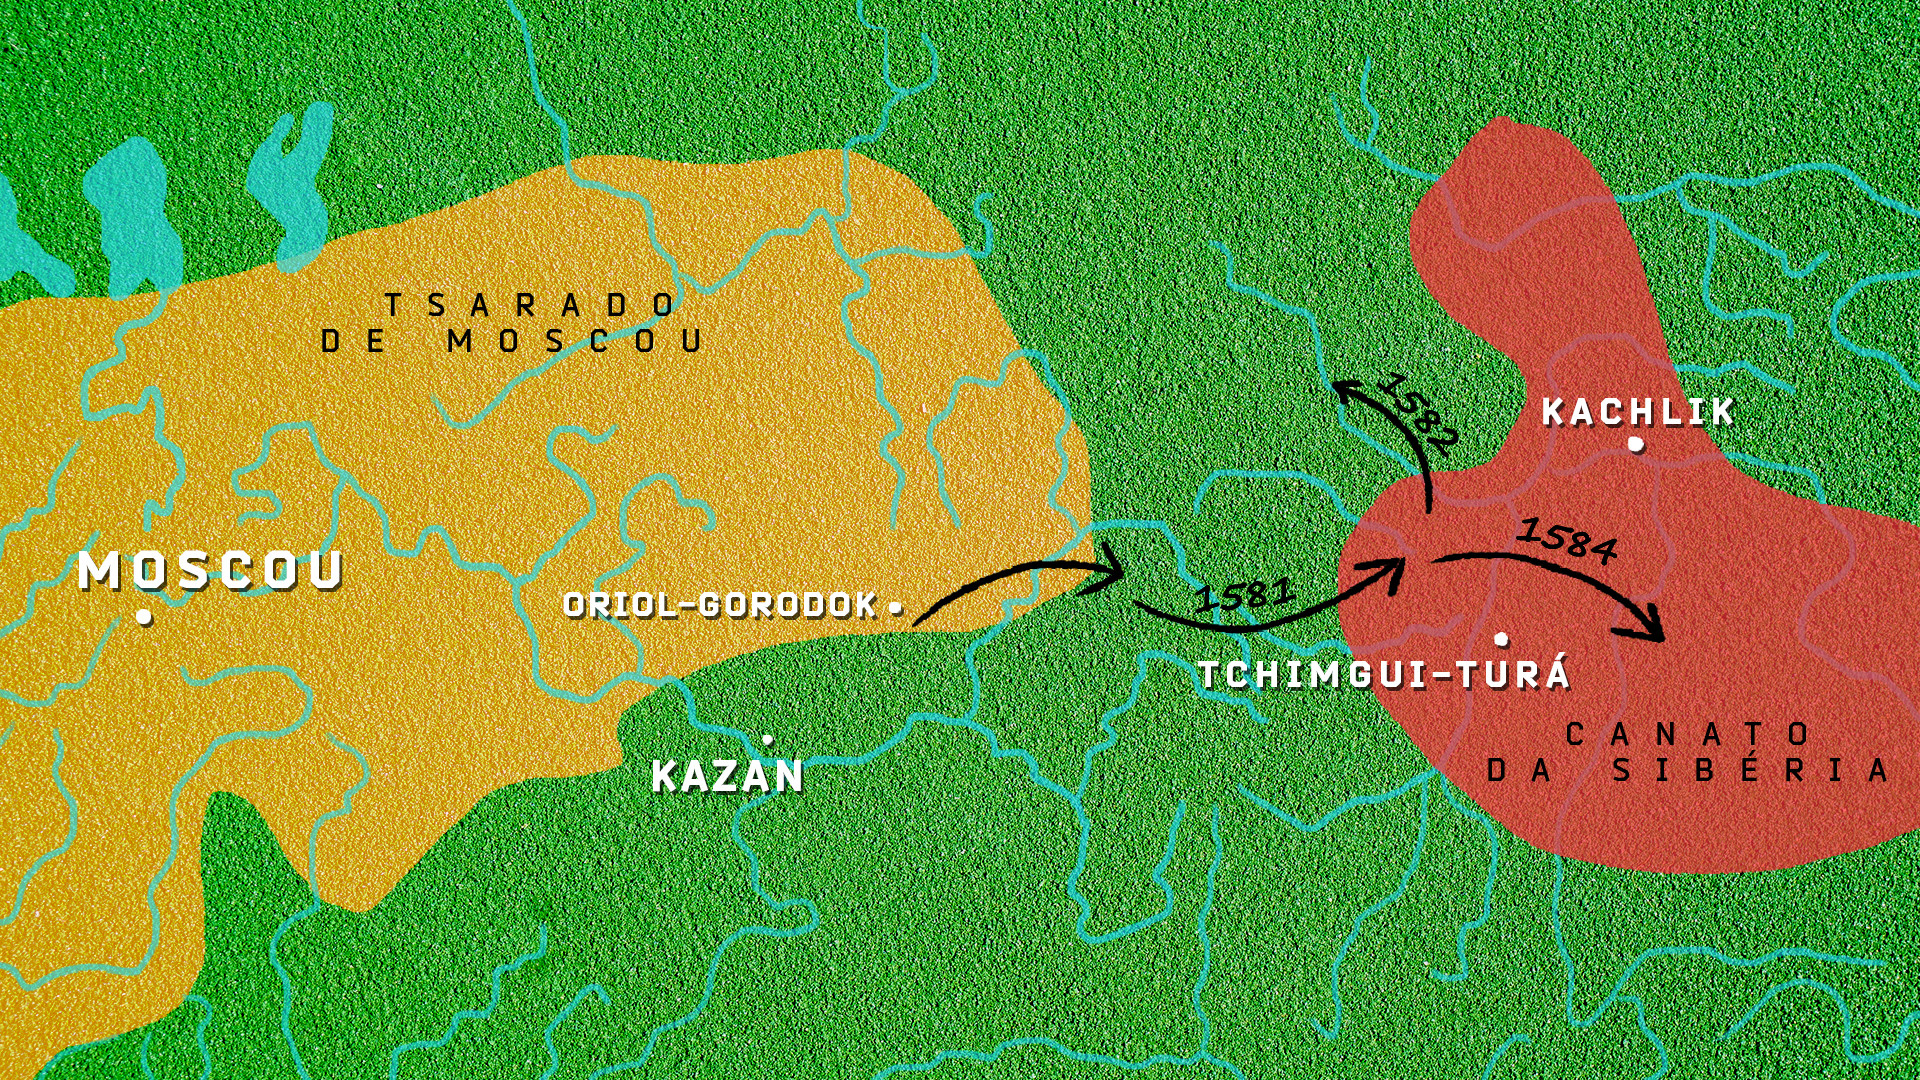 Mapa do Tsarado de Moscou em contraste com o canato da Sibéria; setas pretas indicam a suposta rota do exército de Ermák 